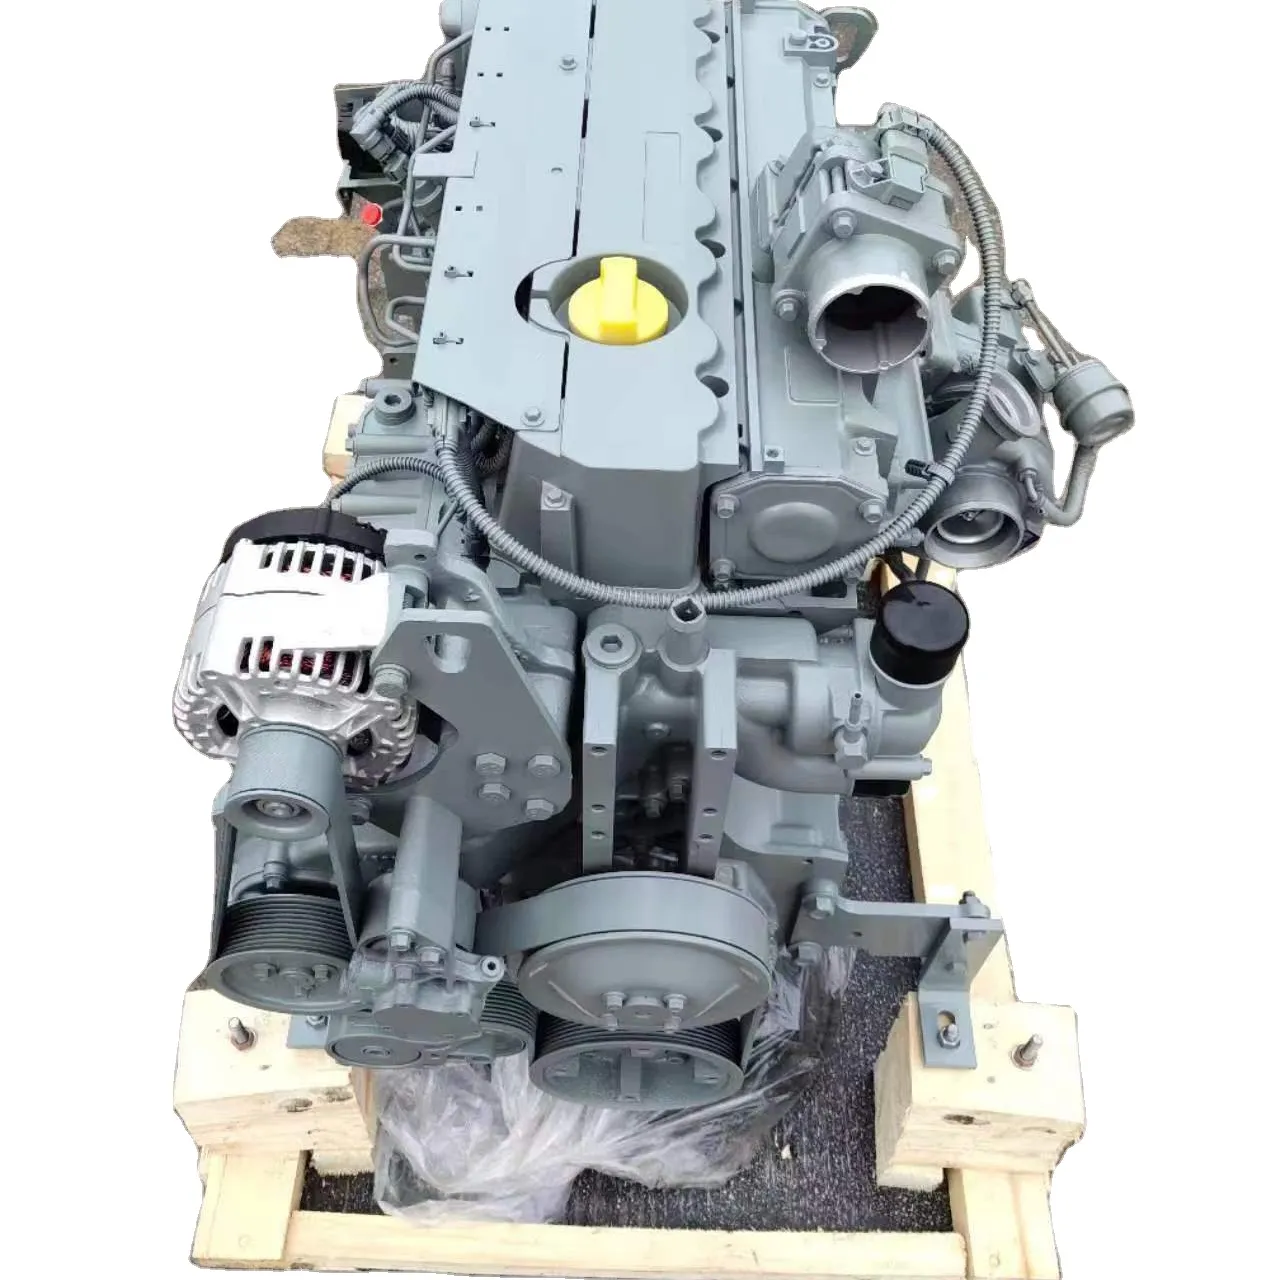 Motore completo diesel TCD2013 L04 2V per motore deutz v olvo senza unità di controllo